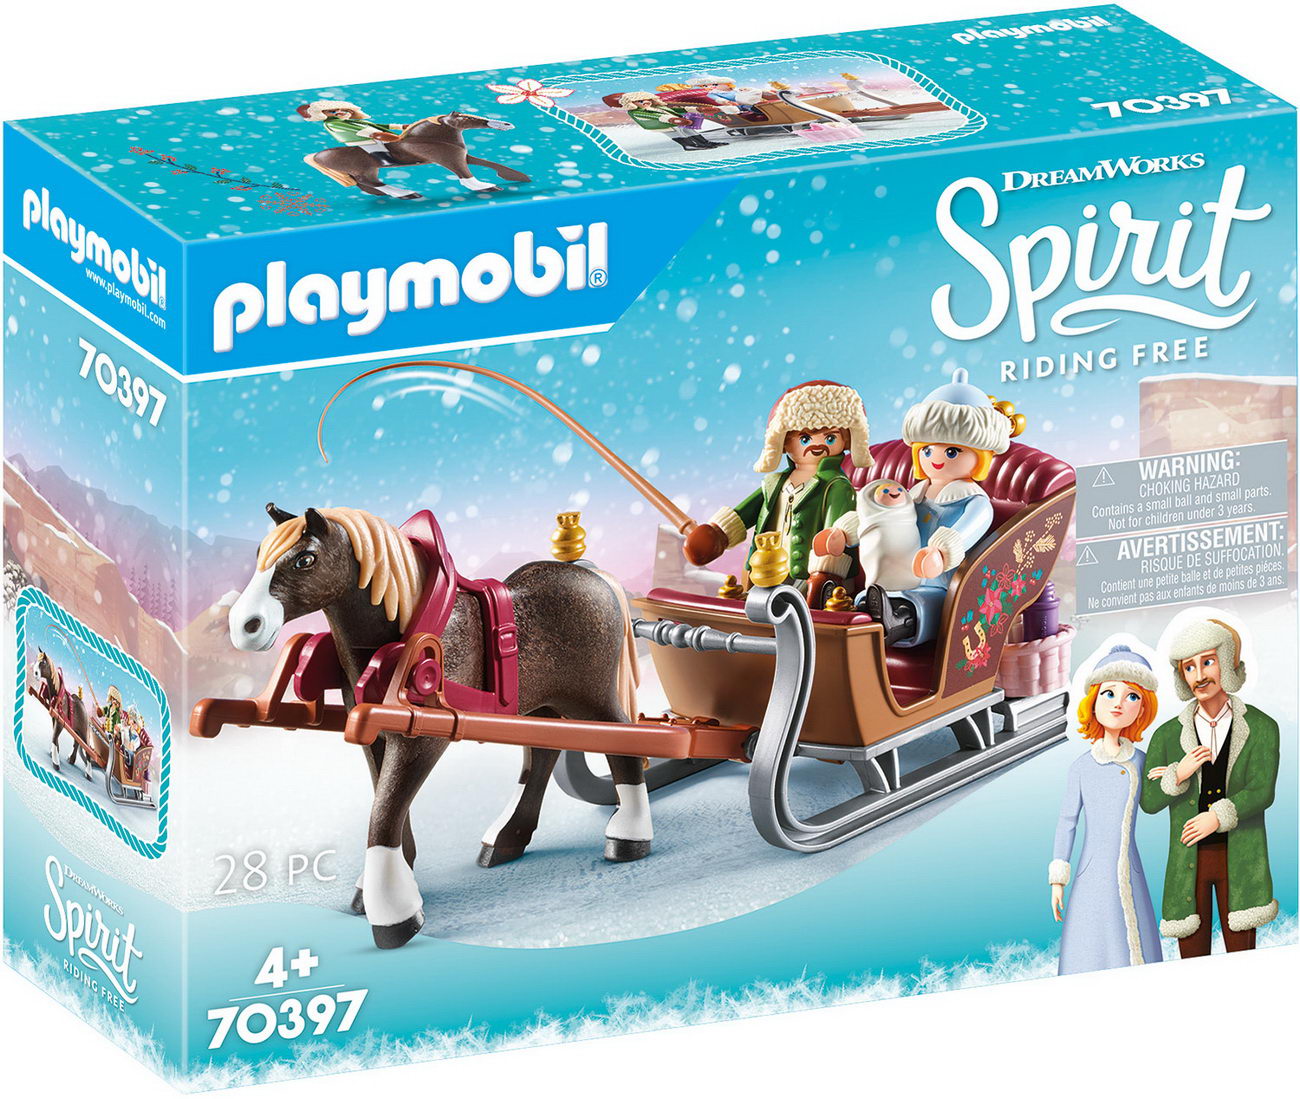 Playmobil 70397 - Winterliche Schlittenfahrt - Spirit - Riding Free